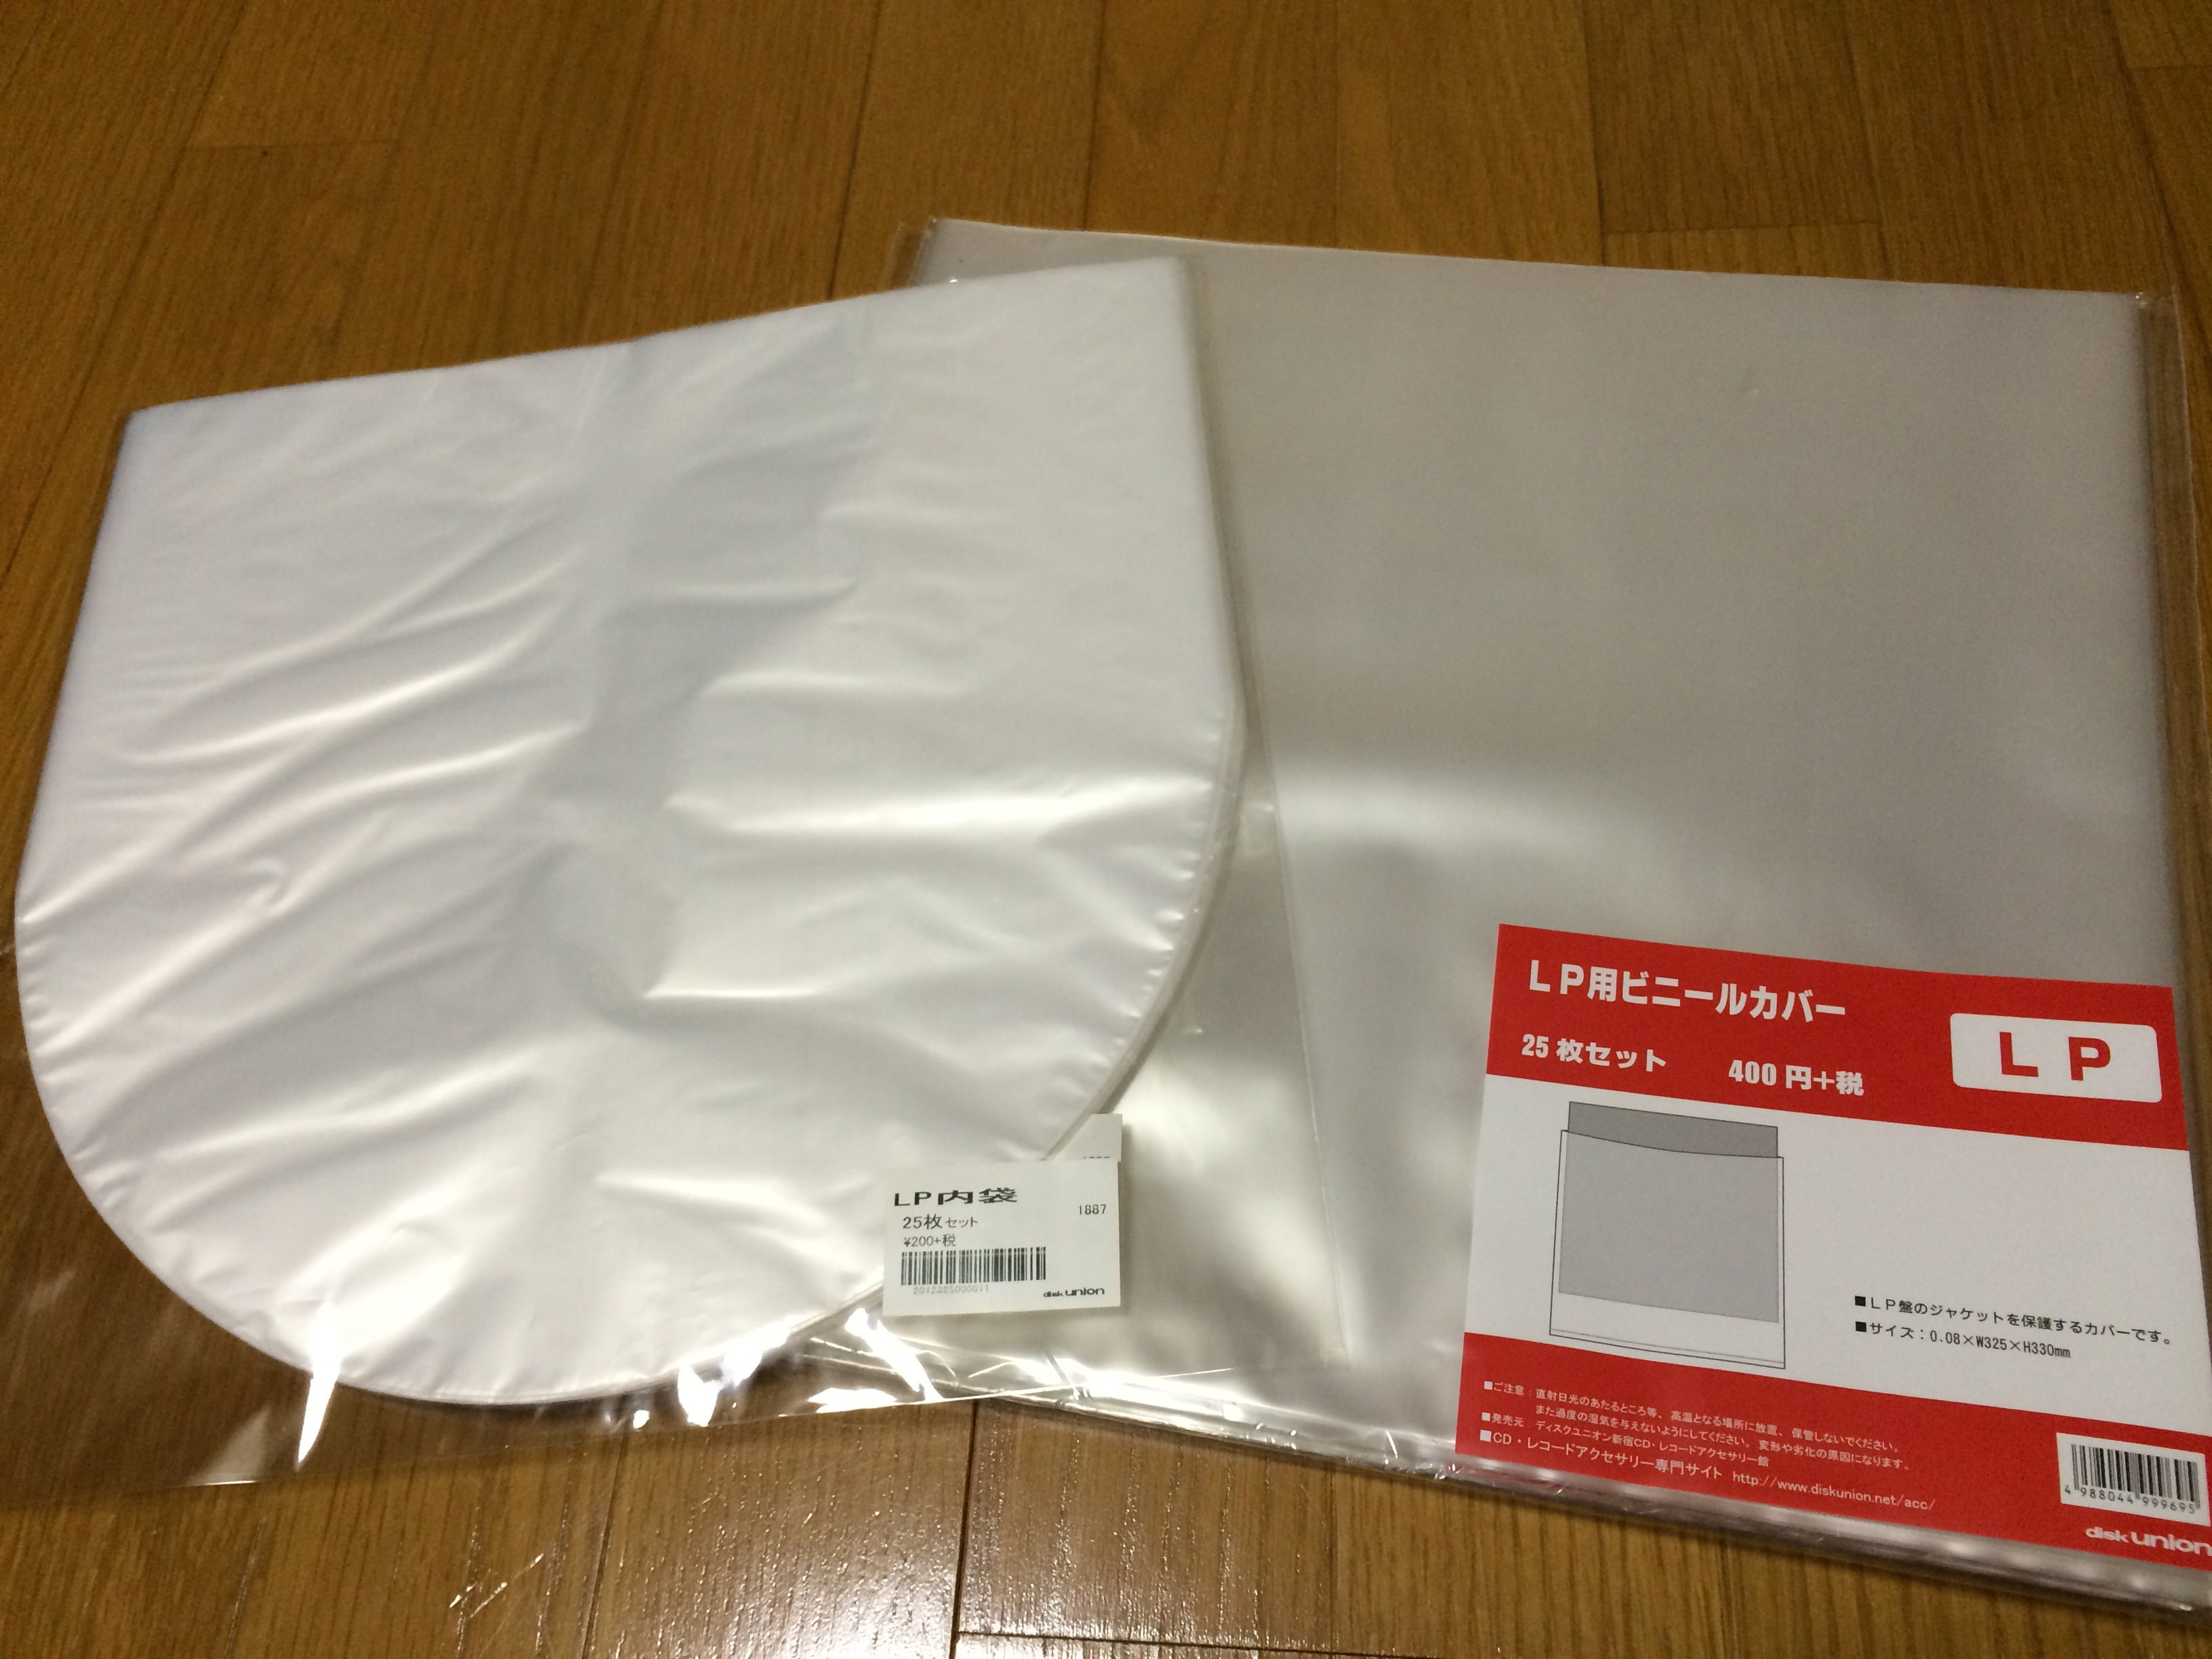 セール開催中最短即日発送 NAGAOKA LPレコードジャケットカバー LPレコード保存用内袋 JC30LP RS-LP2 21 